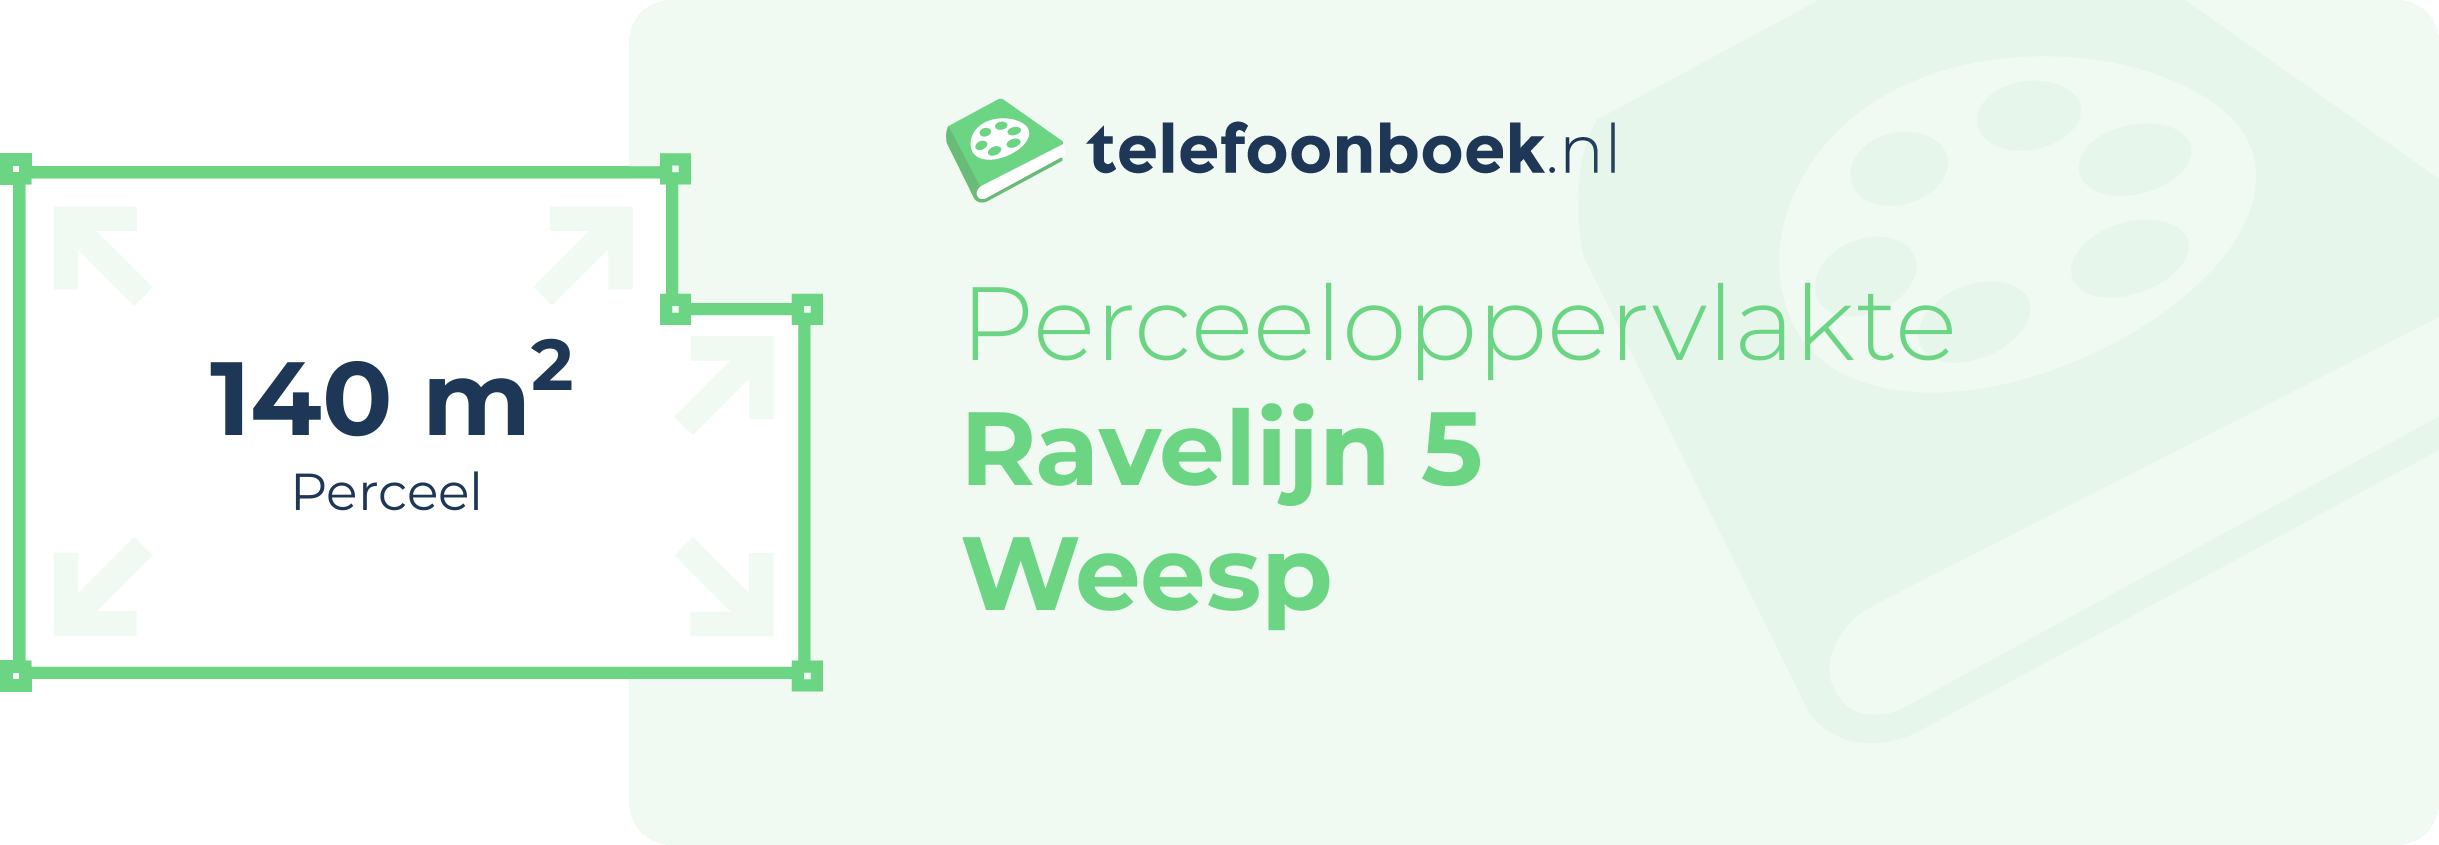 Perceeloppervlakte Ravelijn 5 Weesp